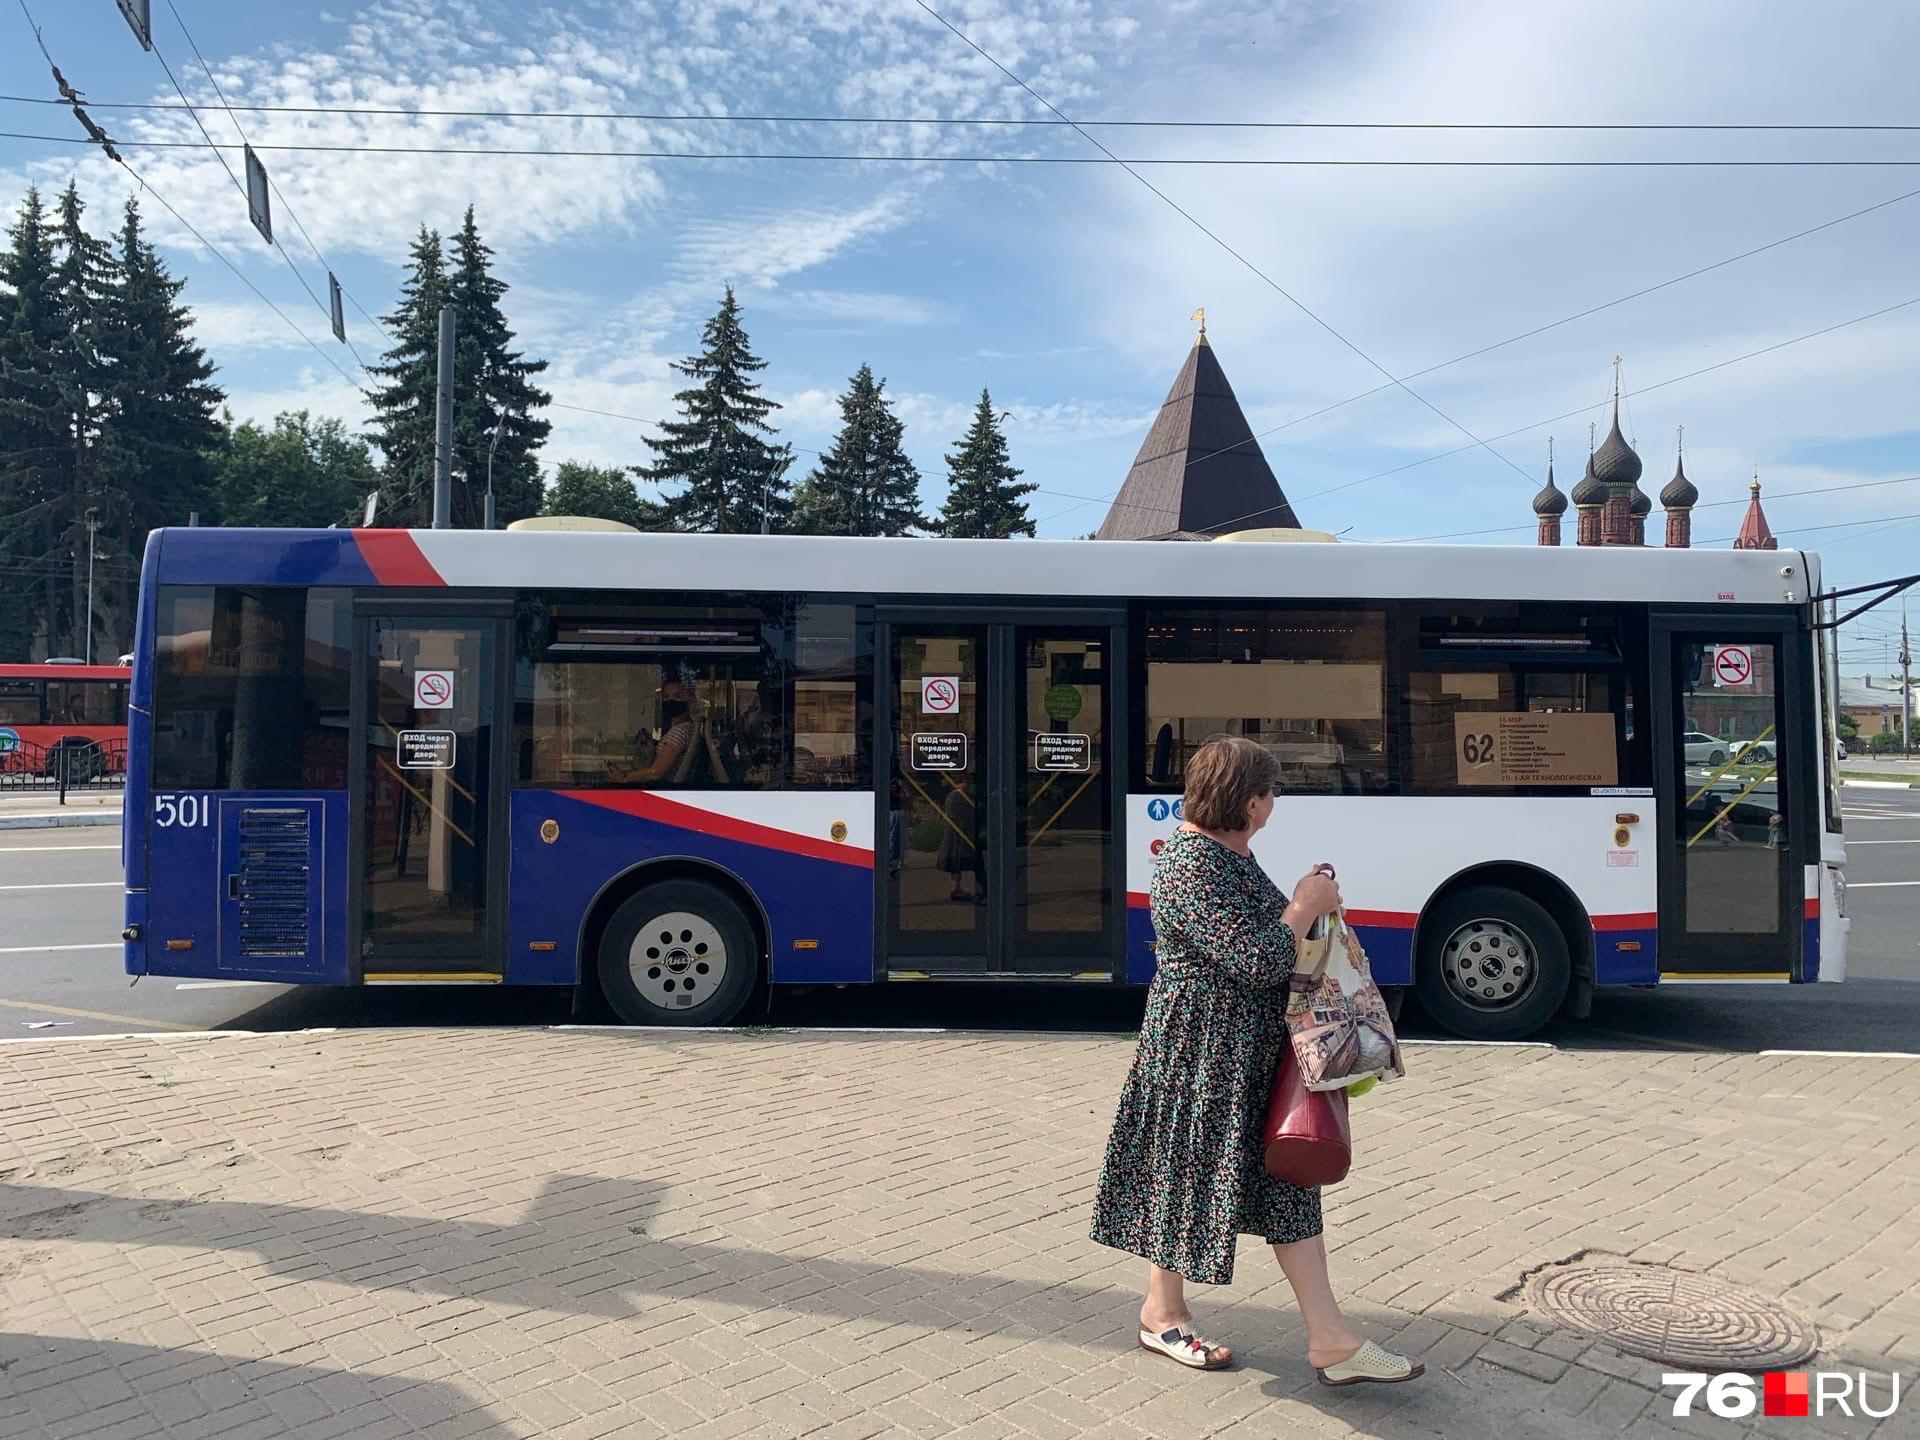 Новые номера автобусов и новые маршруты пока не воспринимаются пассажирами